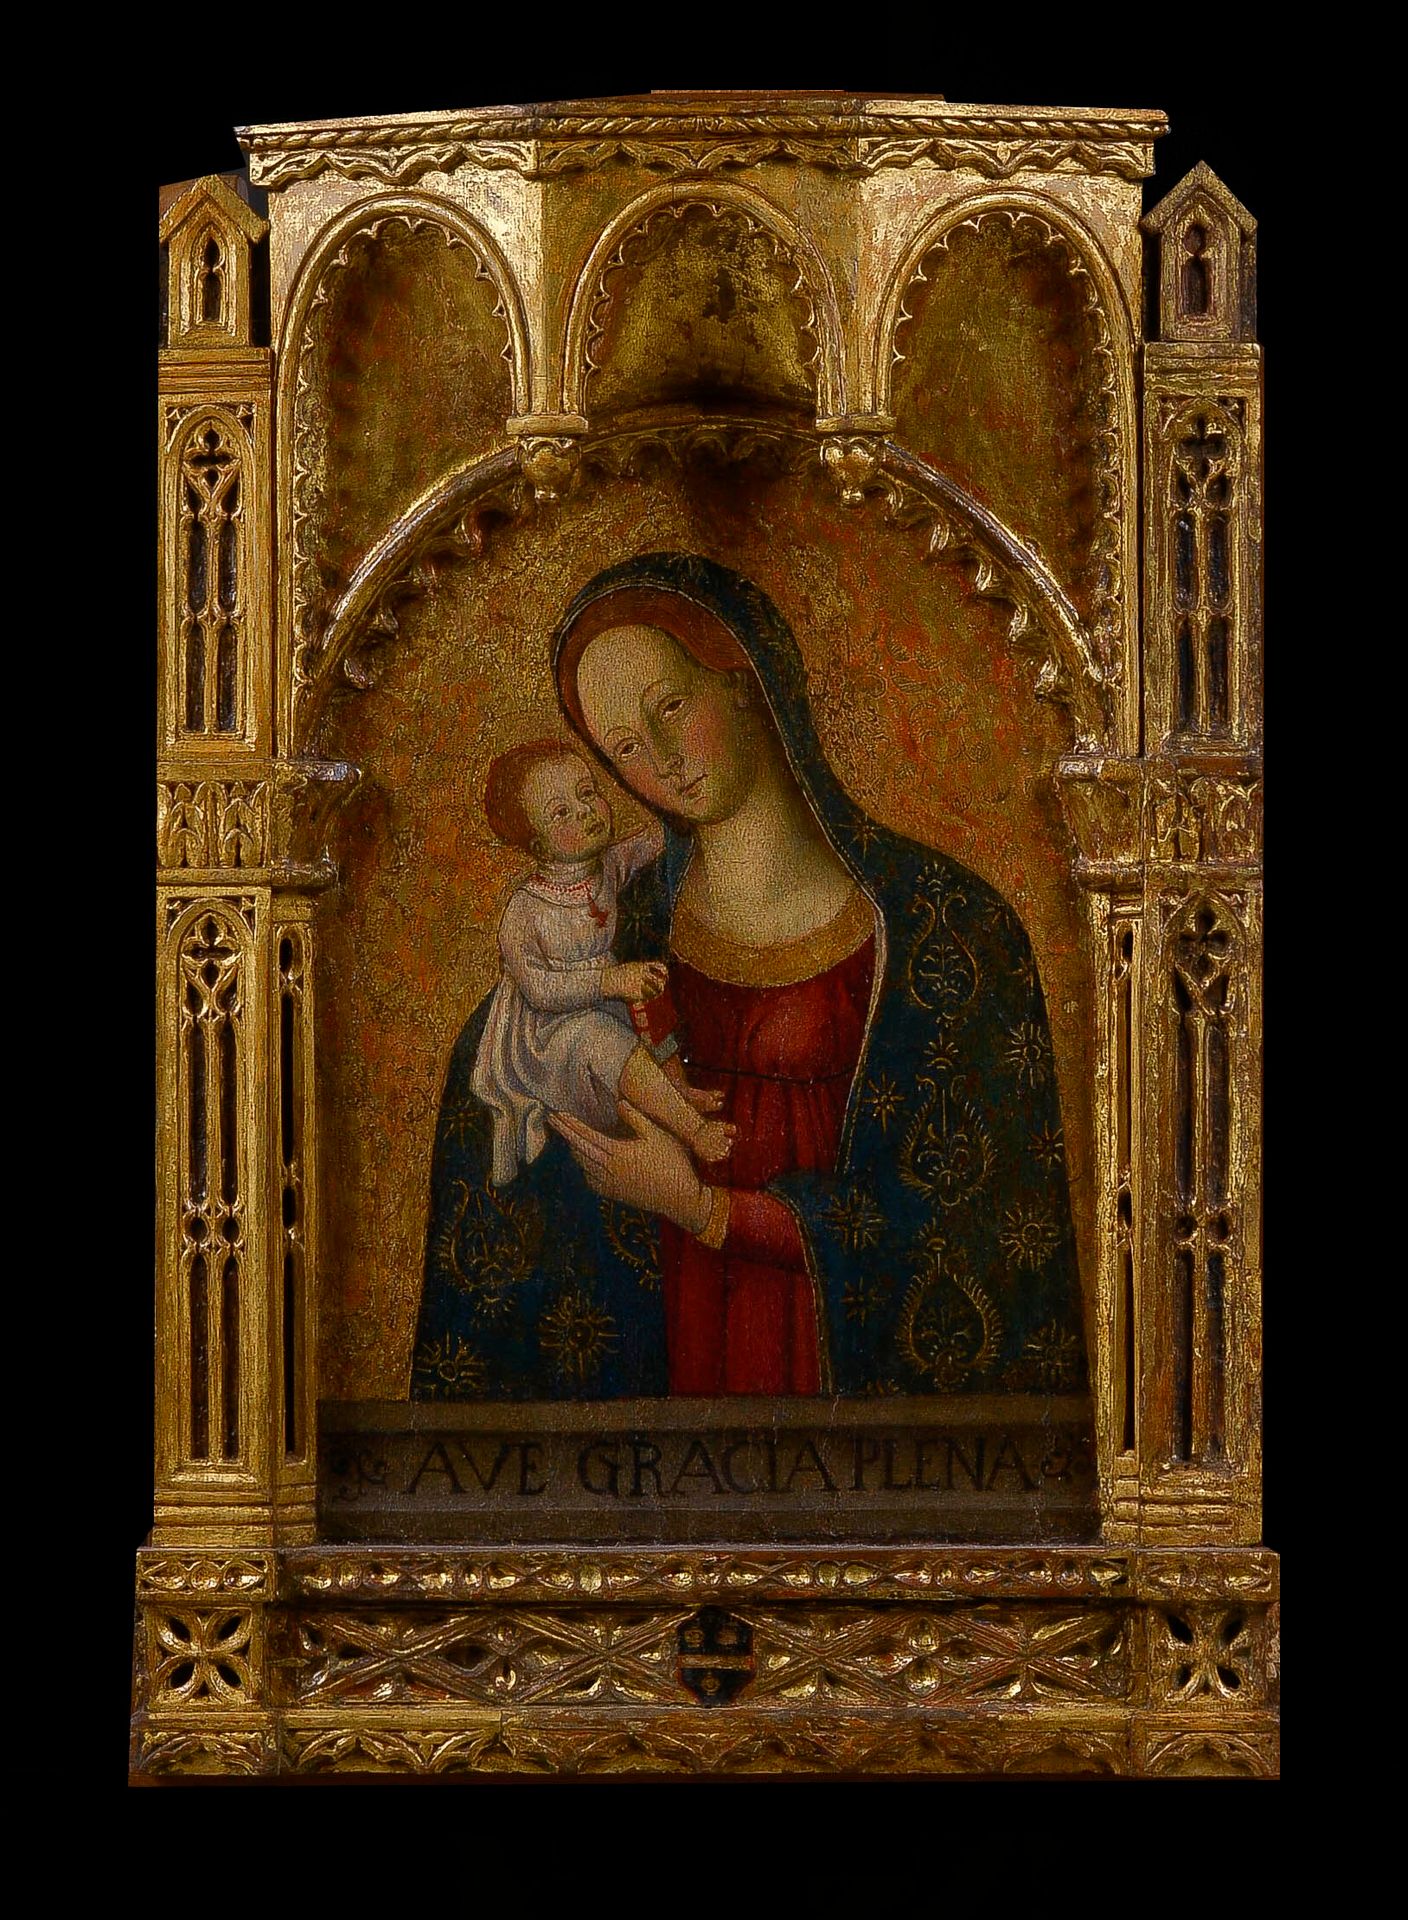 Null 在15世纪SIENNOISE学校的品味中

圣母与圣婴

小组

框架：哥特式风格的建筑镀金木材

高度：64.5厘米

宽度 : 46.5 cm

&hellip;